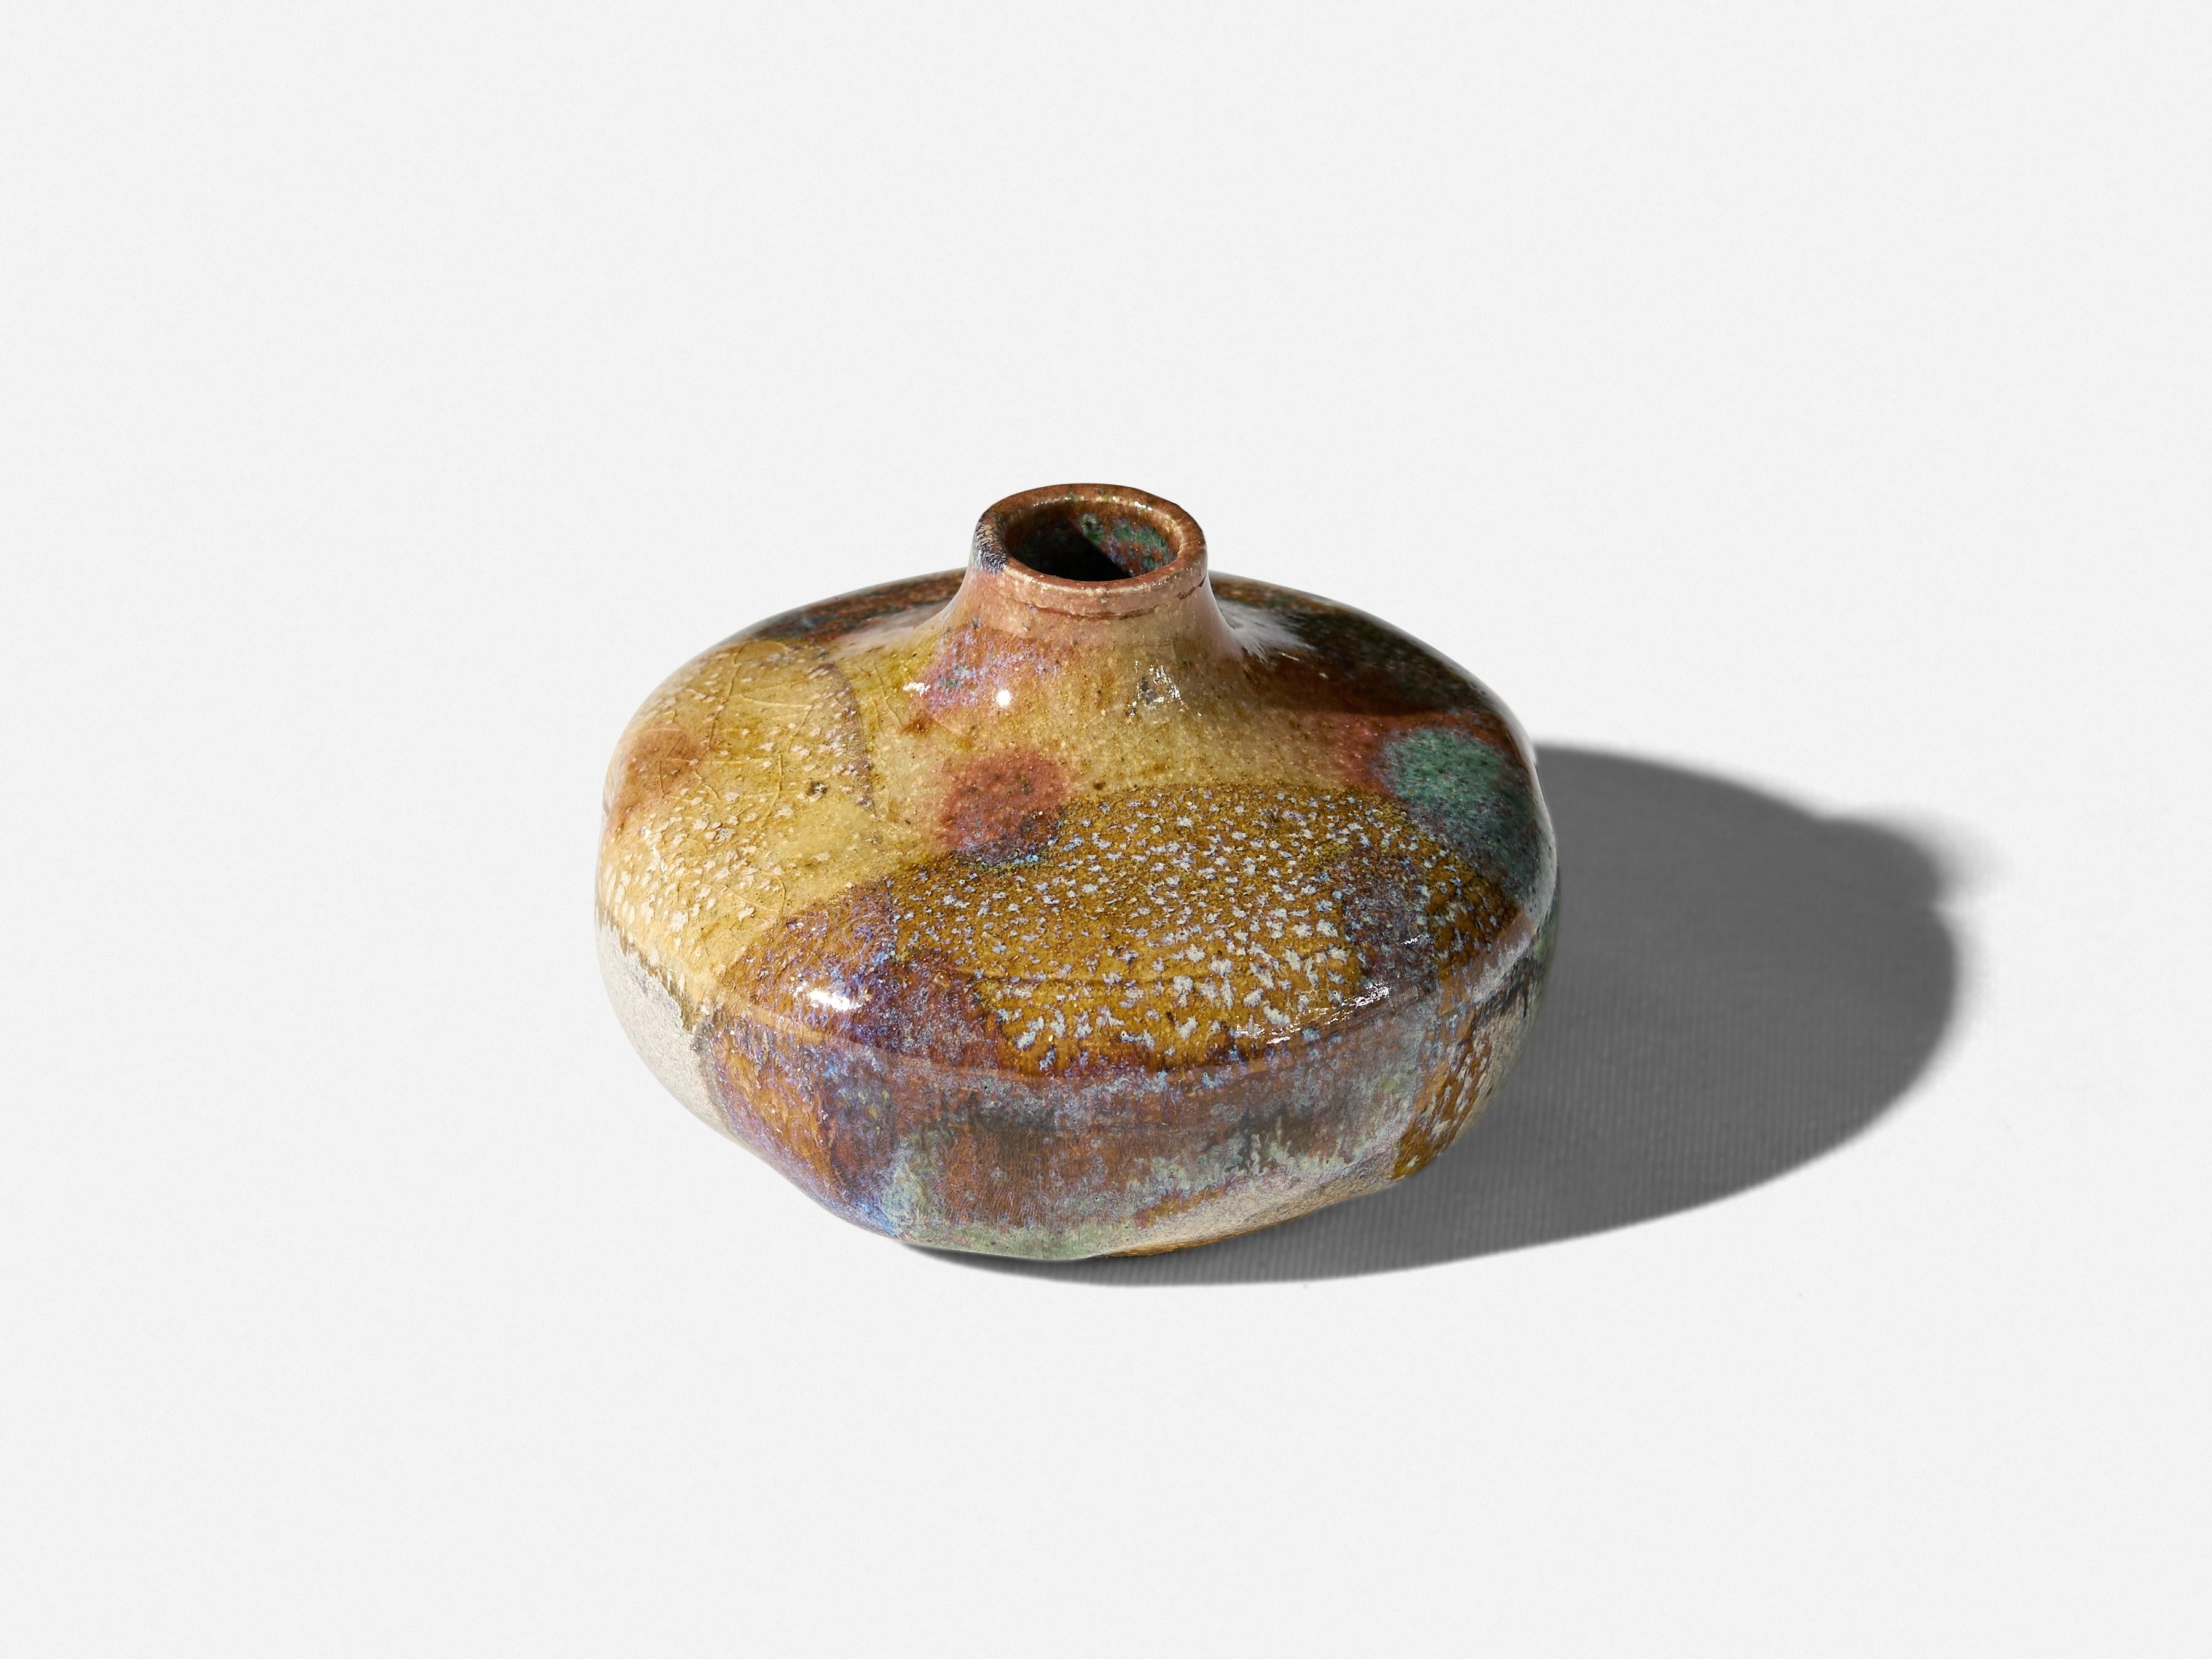 Glazed Studio Pottery stoneware vase
Signed 